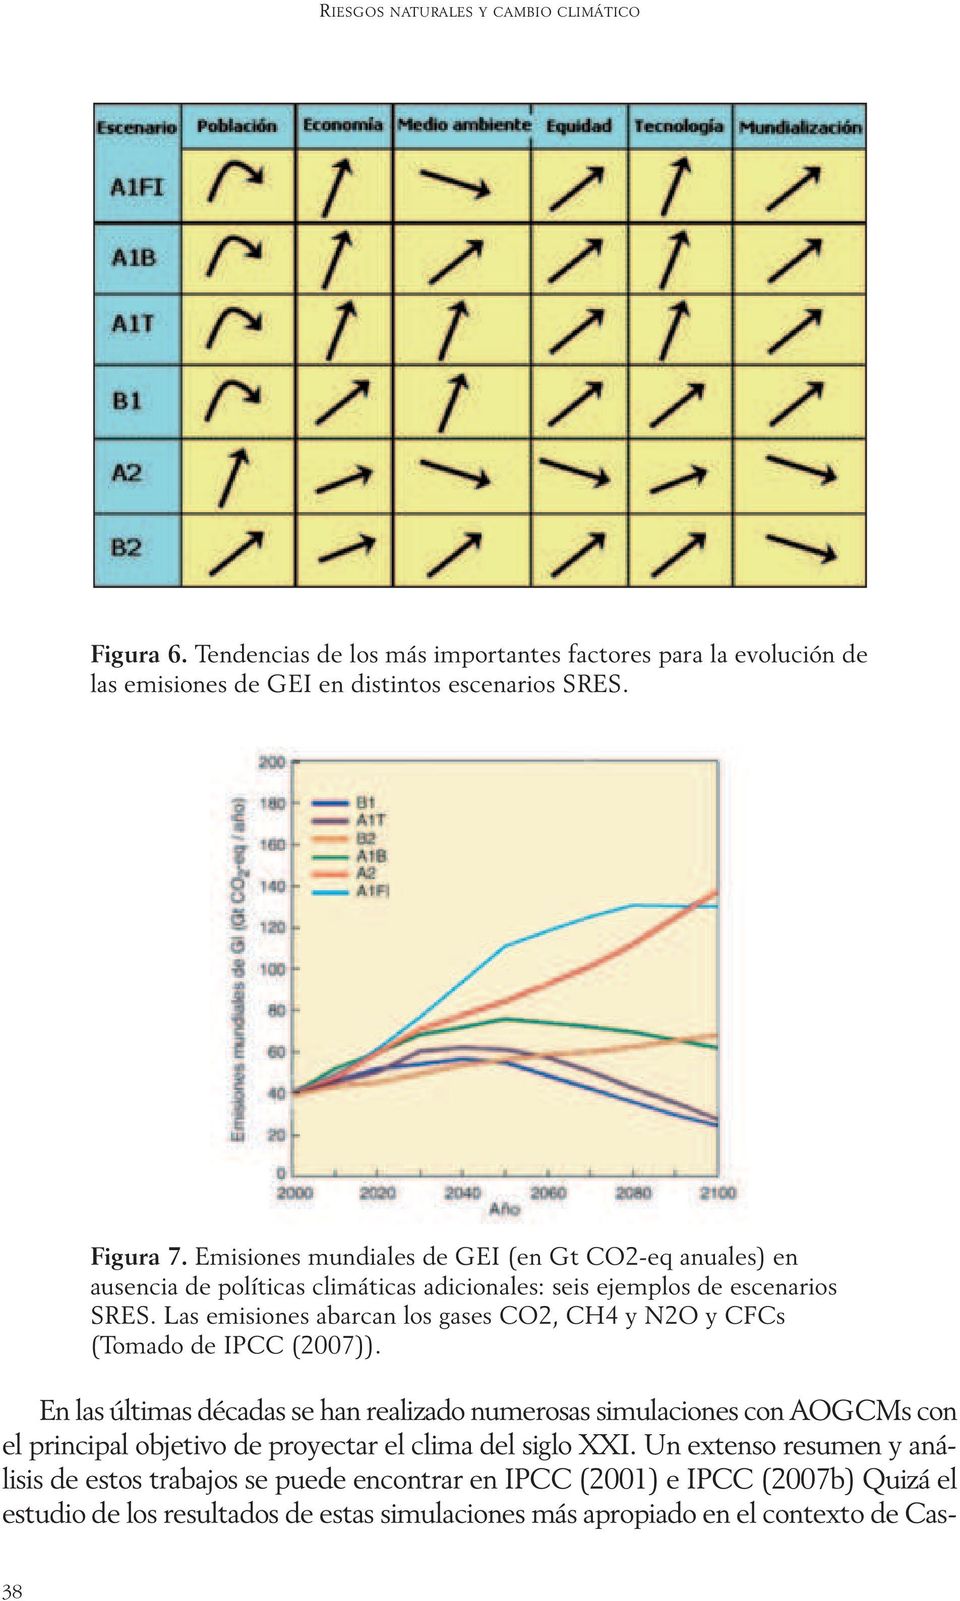 Las emisiones abarcan los gases CO2, CH4 y N2O y CFCs (Tomado de IPCC (2007)).